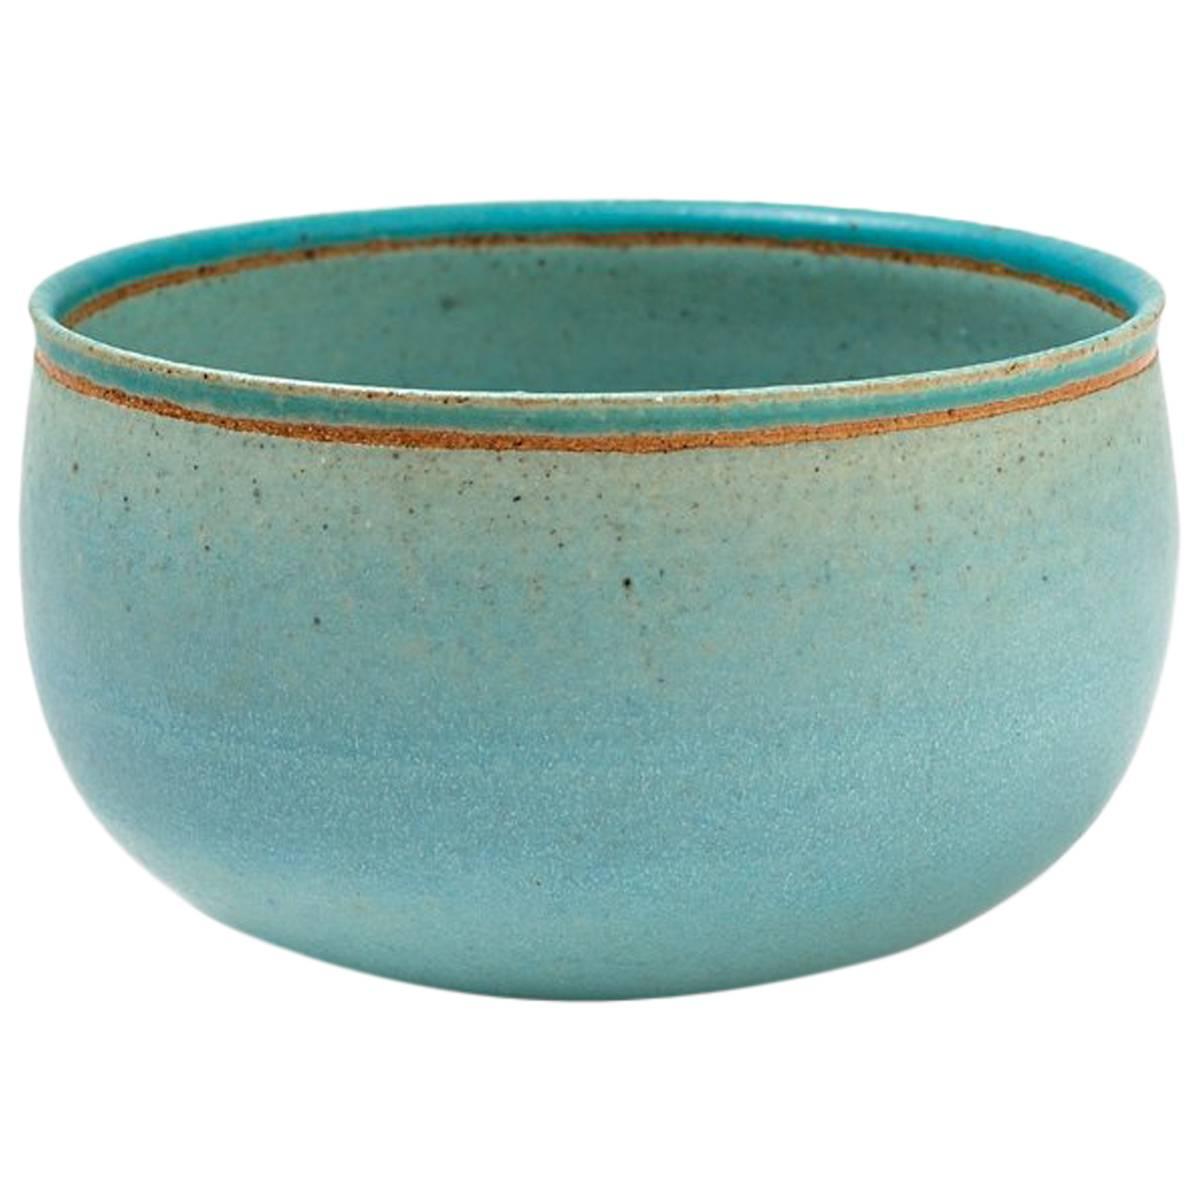 Very Rare and Elegant Blue Ceramic Bowl by Alev Ebüzziya Siesbye, circa 1988